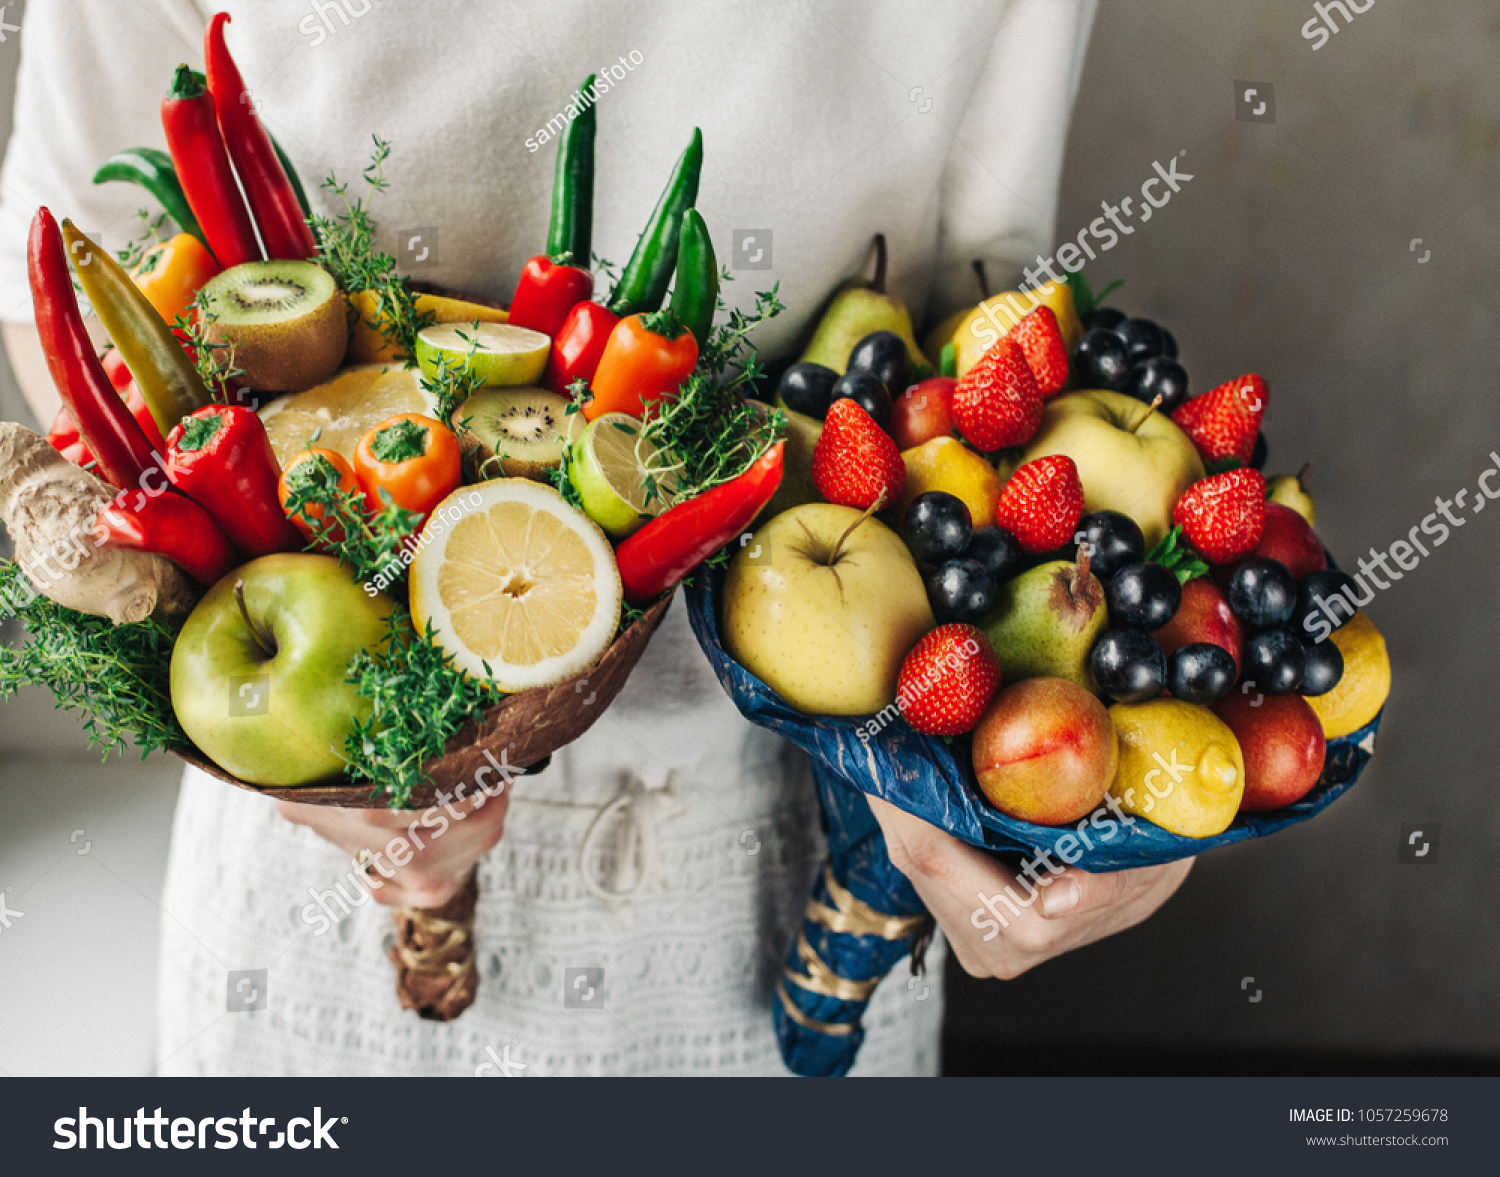 Съедобный. Фруктовый букет. Необычные букеты из овощей. Композиция из овощей и фруктов. Композиция из фруктов.